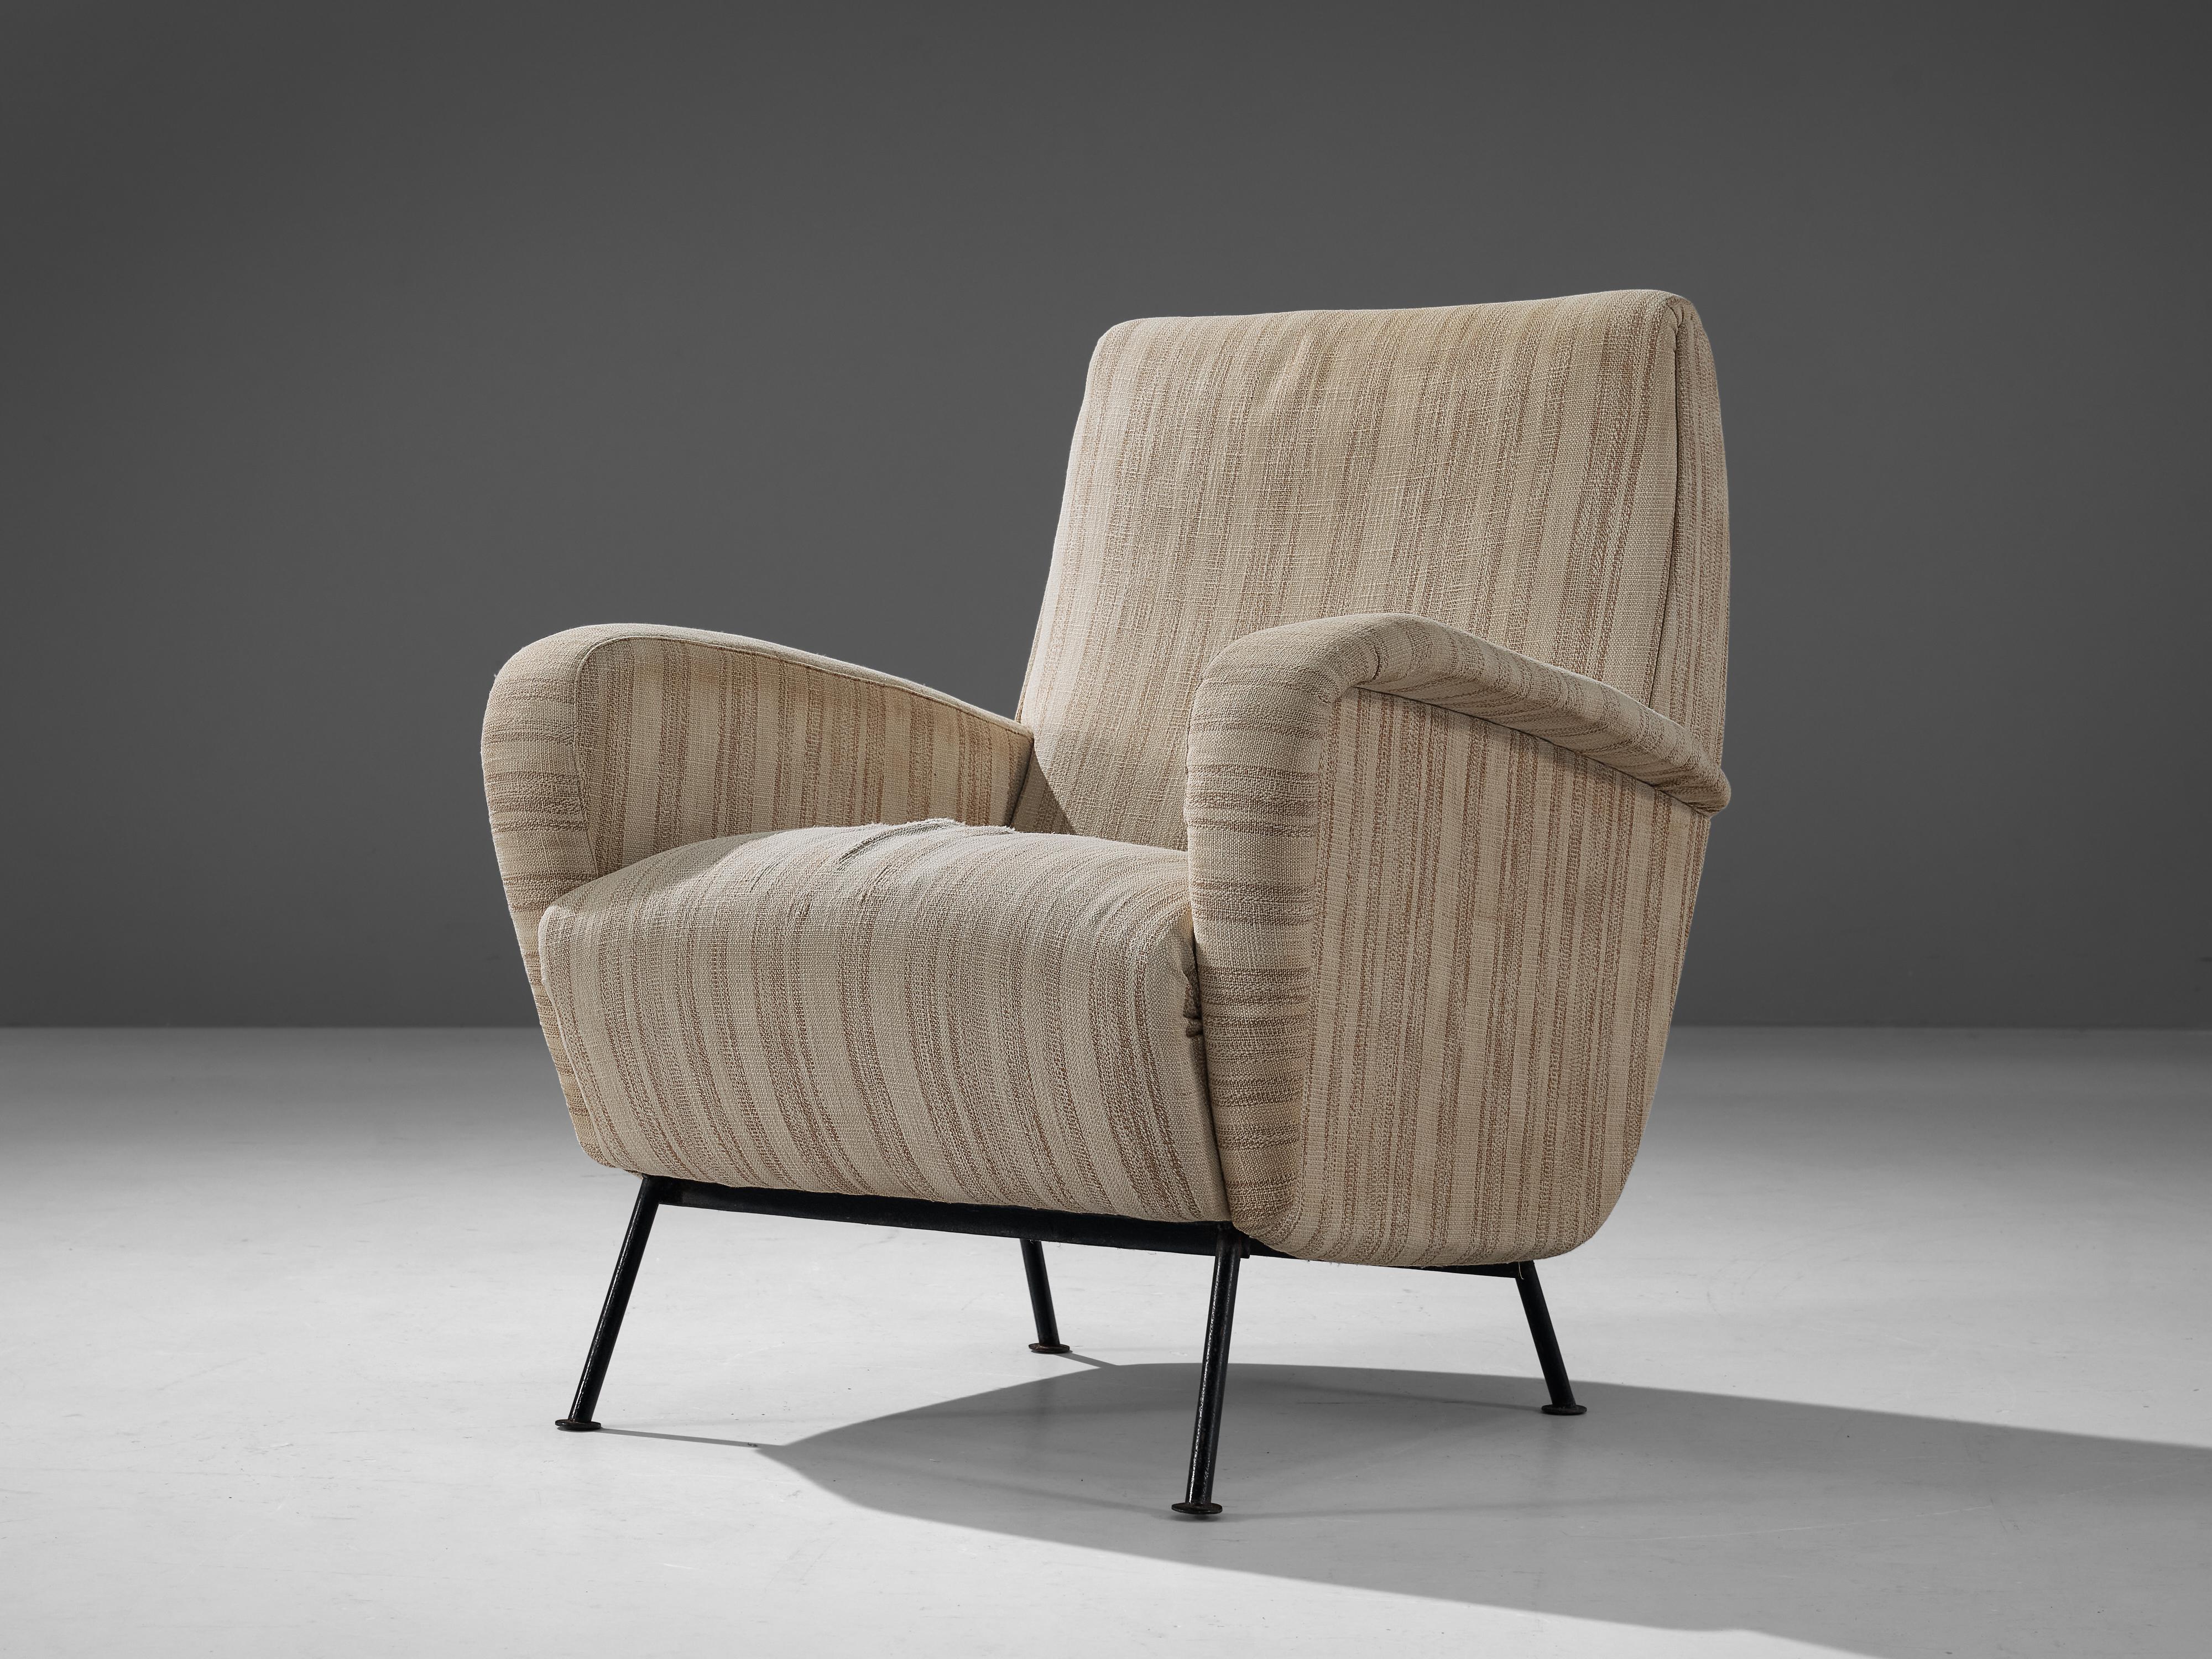 Chaise longue, tissu, métal, Italie, années 1950.

Cette chaise longue est un exemple emblématique du design italien des années cinquante. Organique et sculpturale, la chaise longue est tout sauf minimaliste. Équipé de pieds métalliques en pointe,